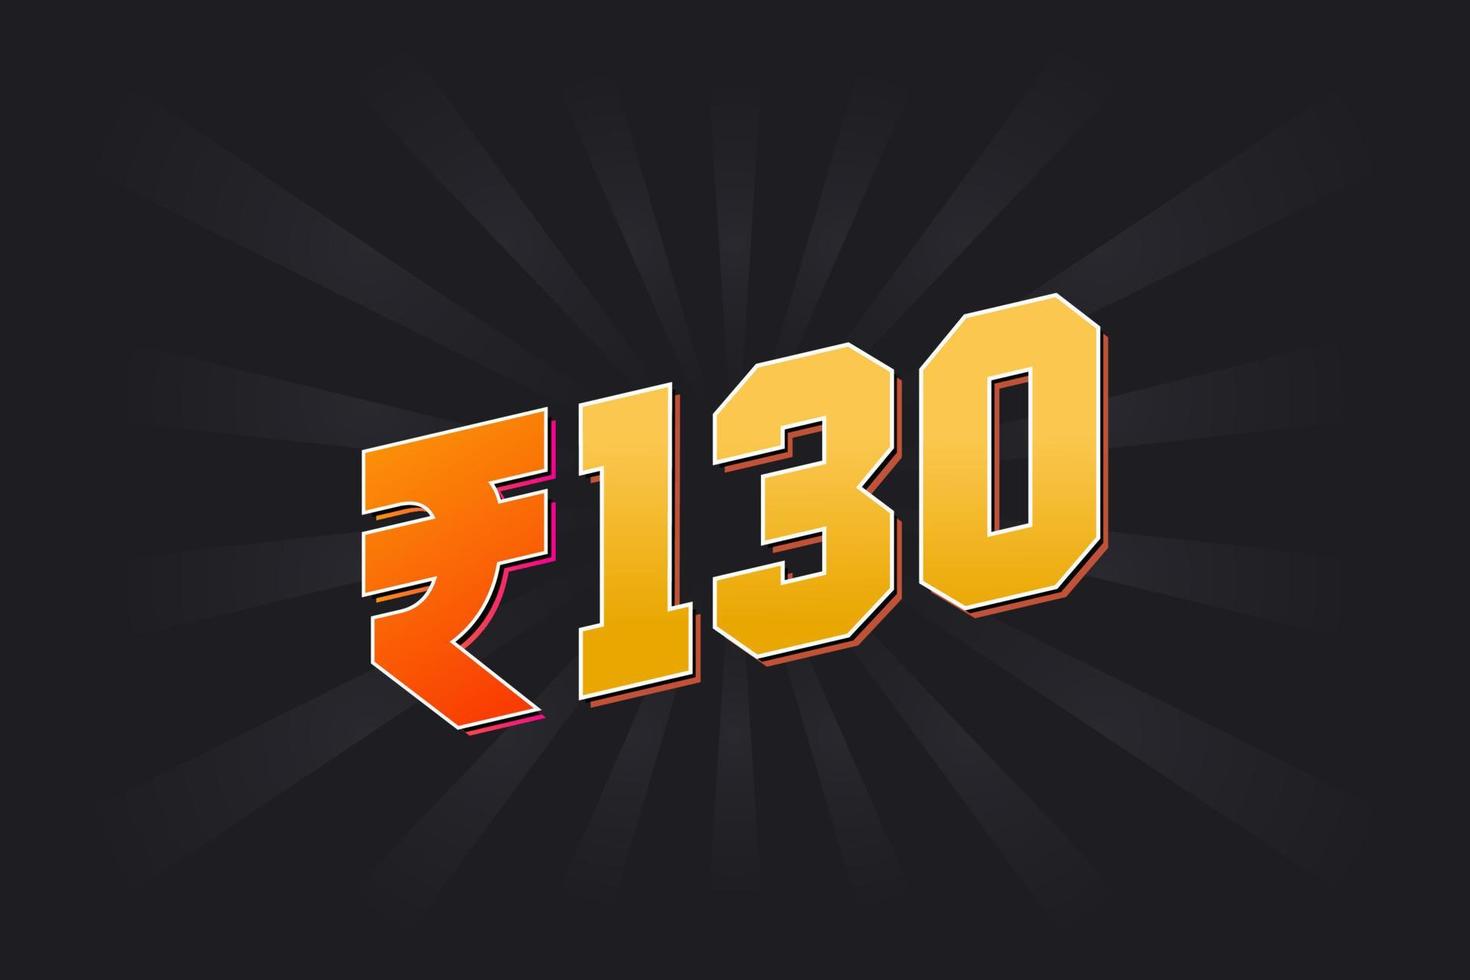 130 indisk rupee vektor valuta bild. 130 rupee symbol djärv text vektor illustration